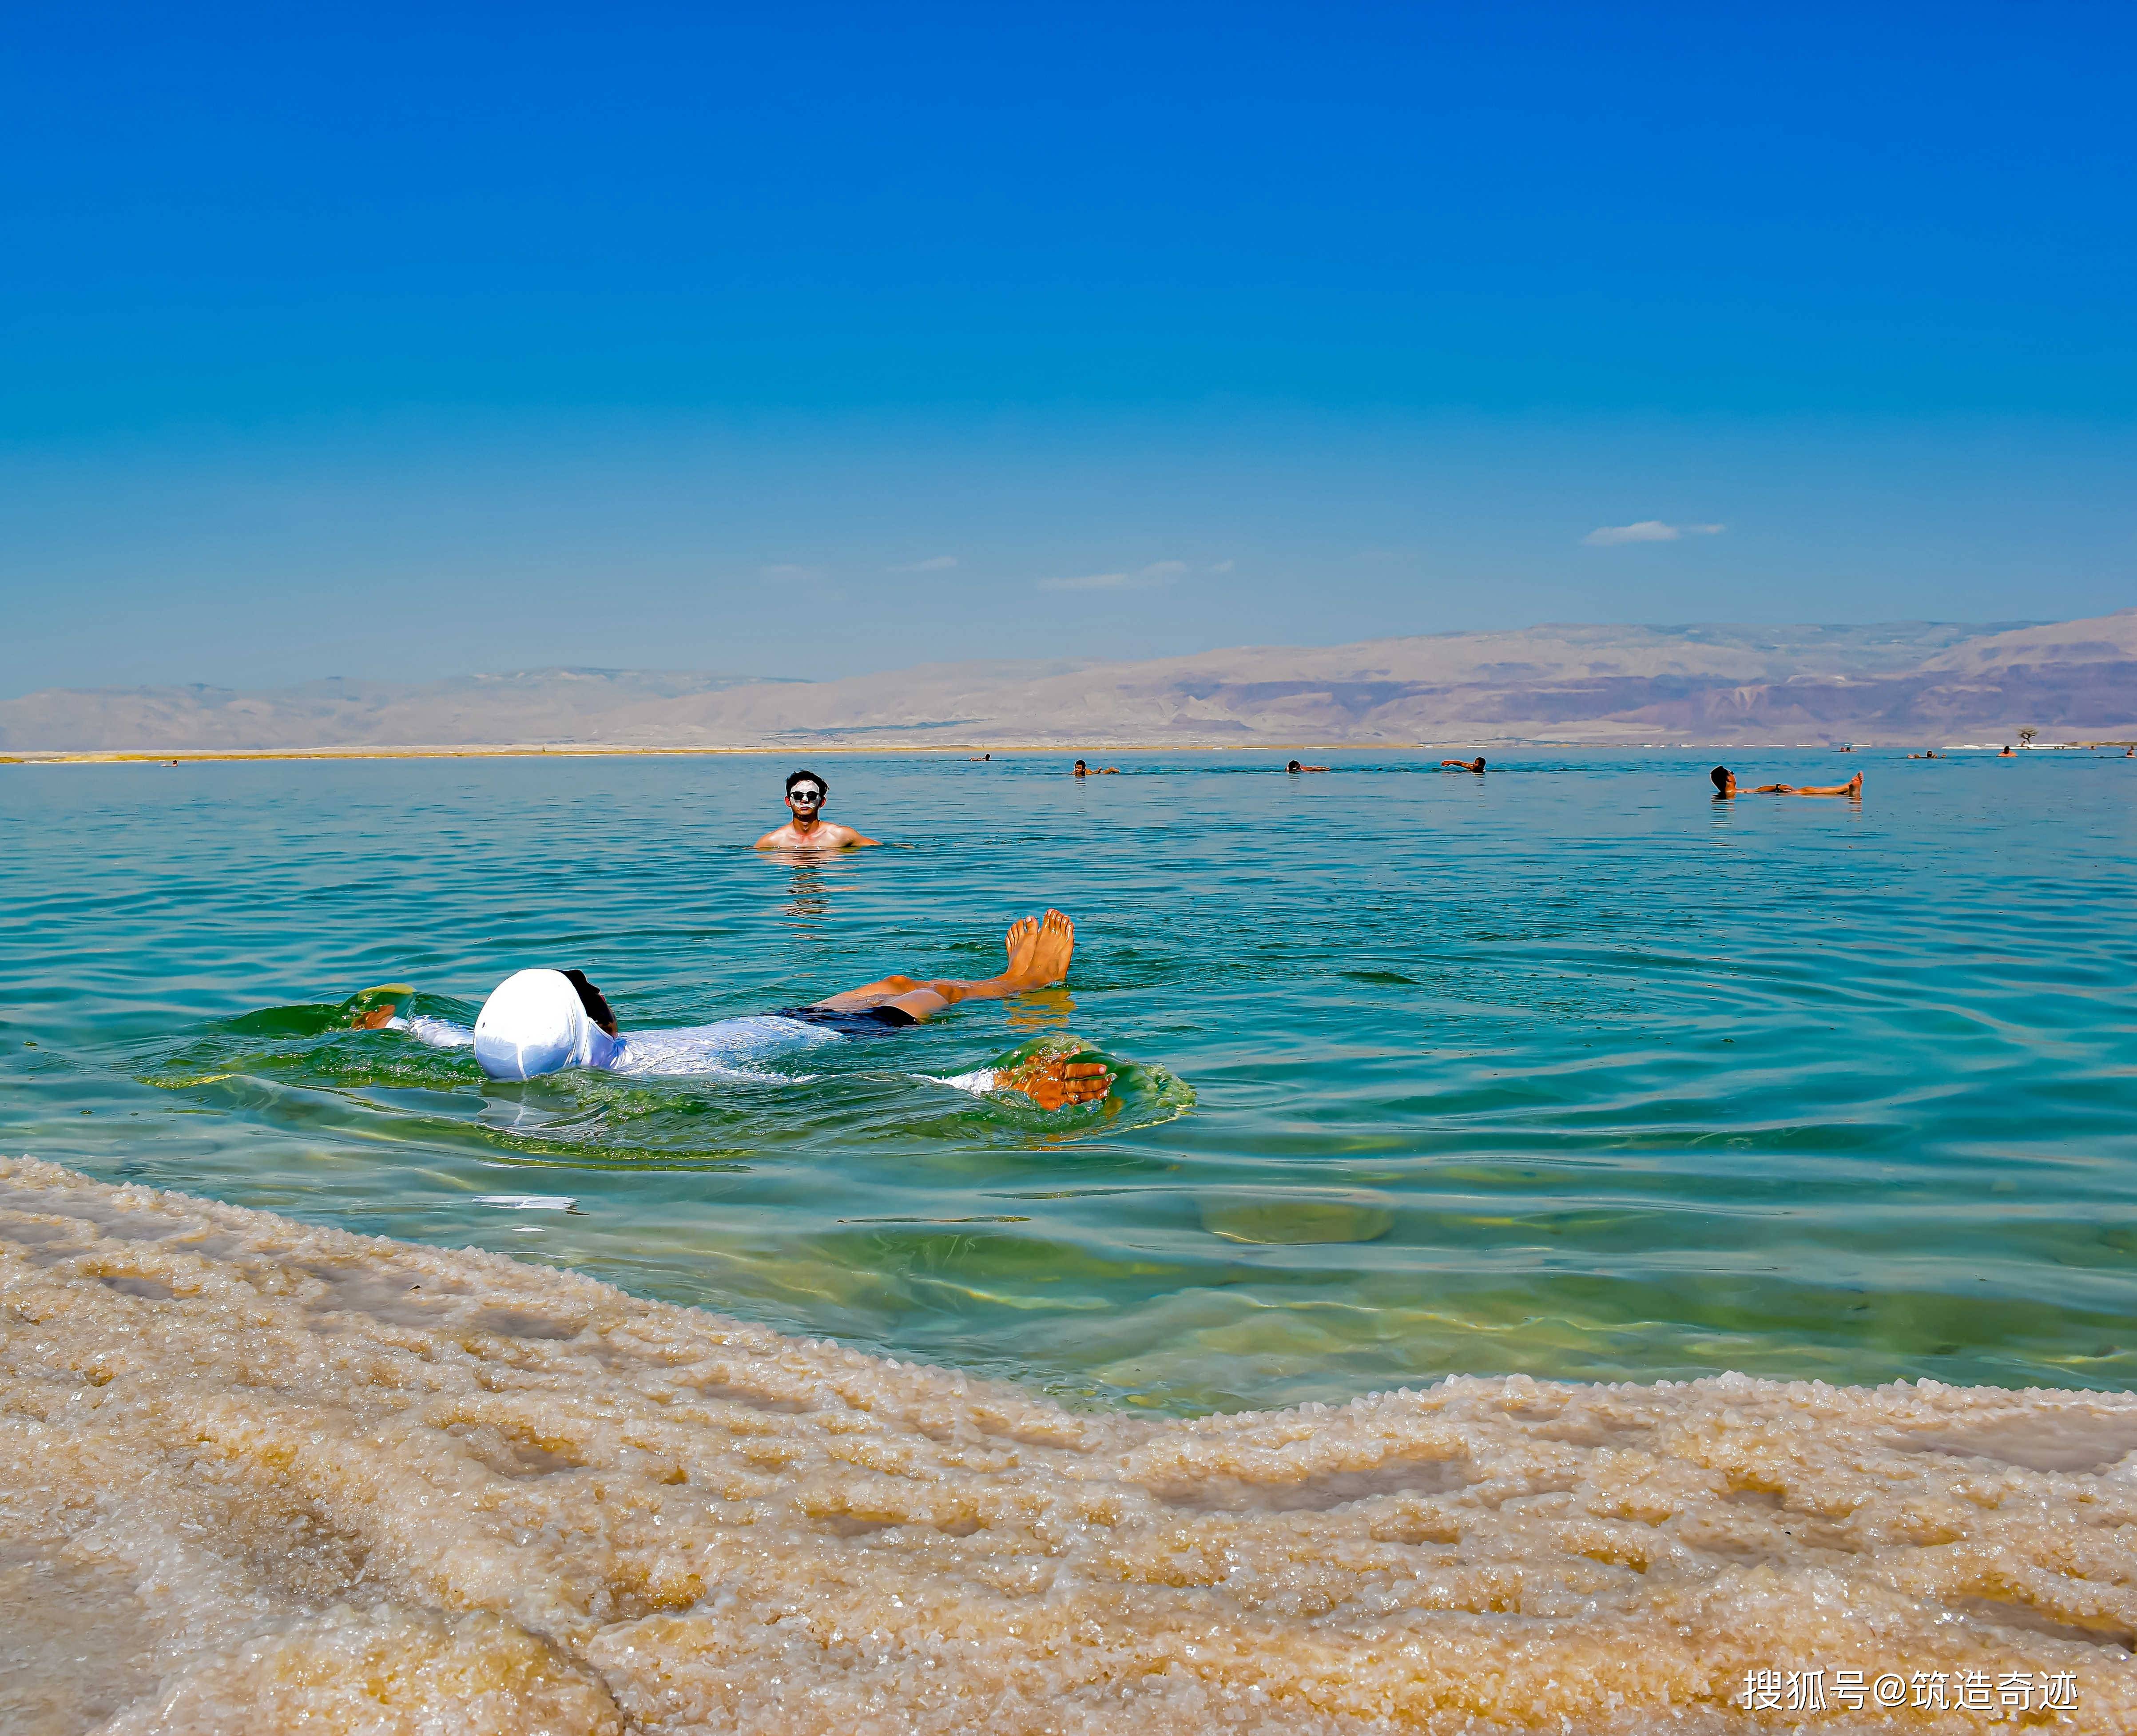 死海:世界上最神奇的地方之一,并不适合一般游客